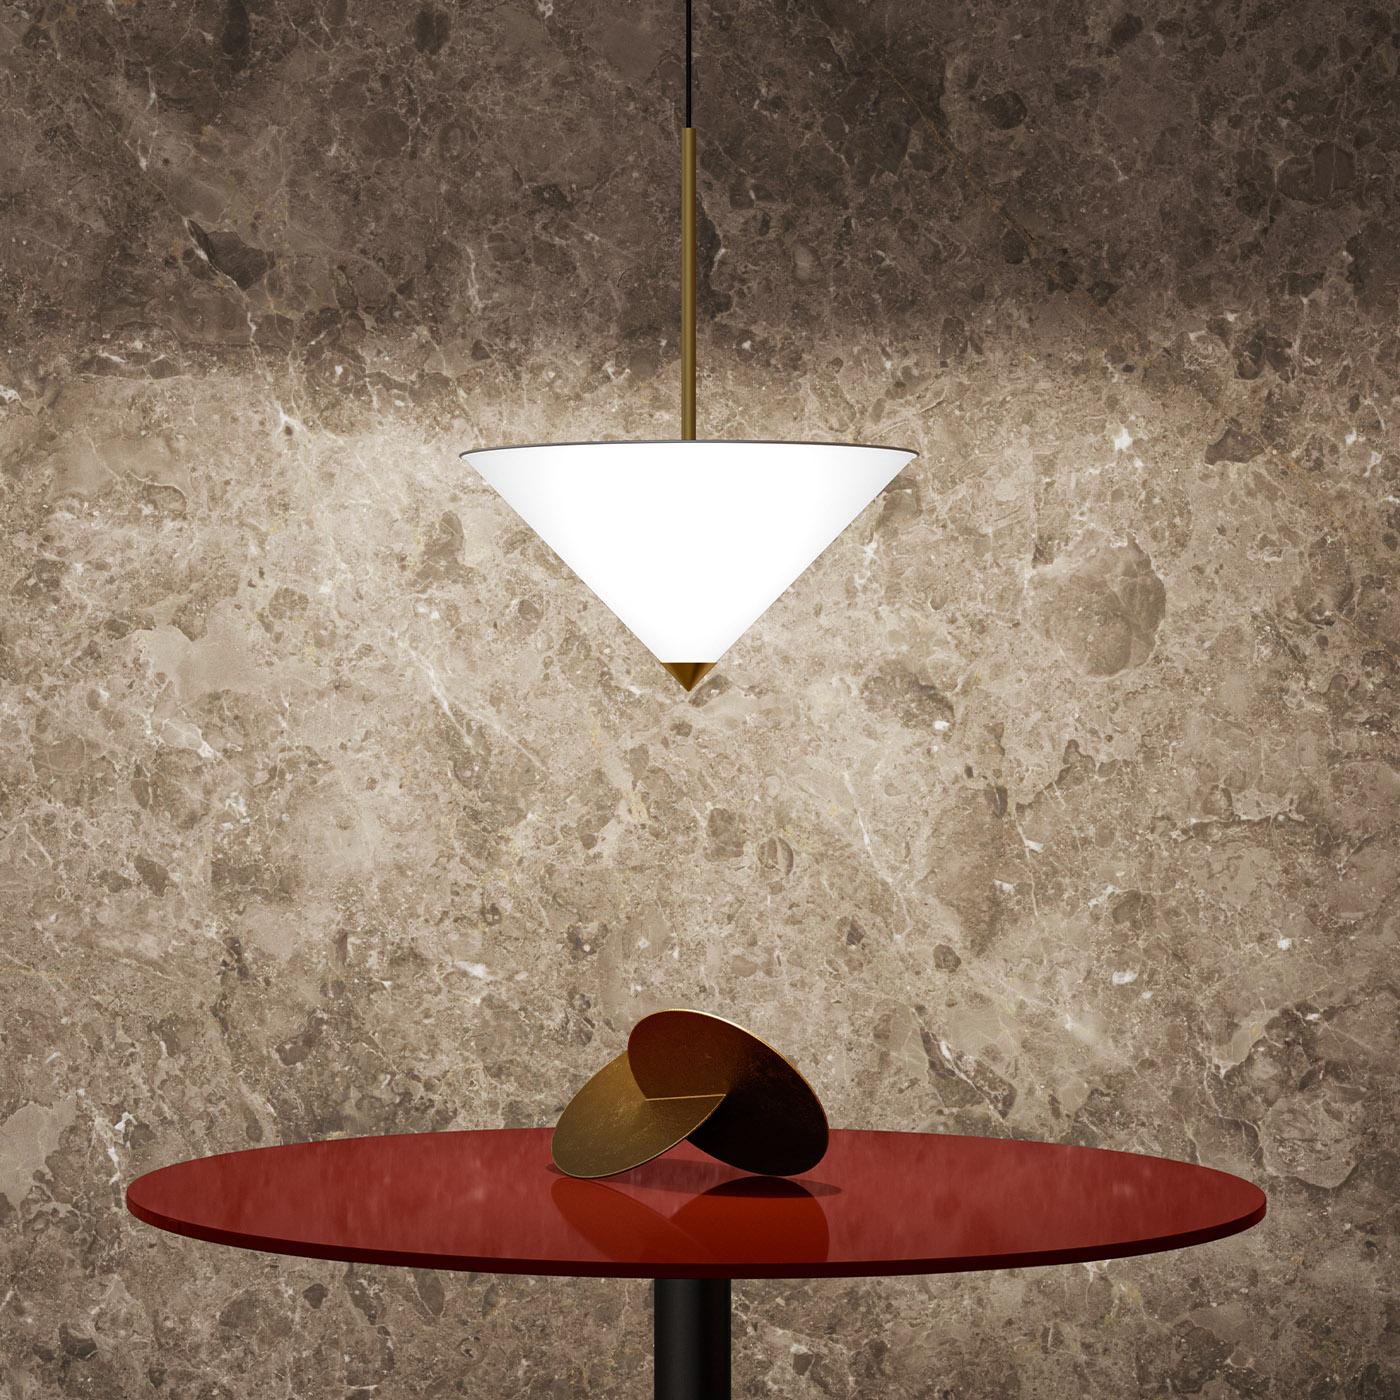 Une conception extravagante de Lorenza Bozzoli, cette lampe suspendue sera un ajout iconique à un intérieur contemporain éclectique. Suspendu à une rosace en nickel satiné, il présente un abat-jour conique en polycarbonate blanc satiné et enrichi de